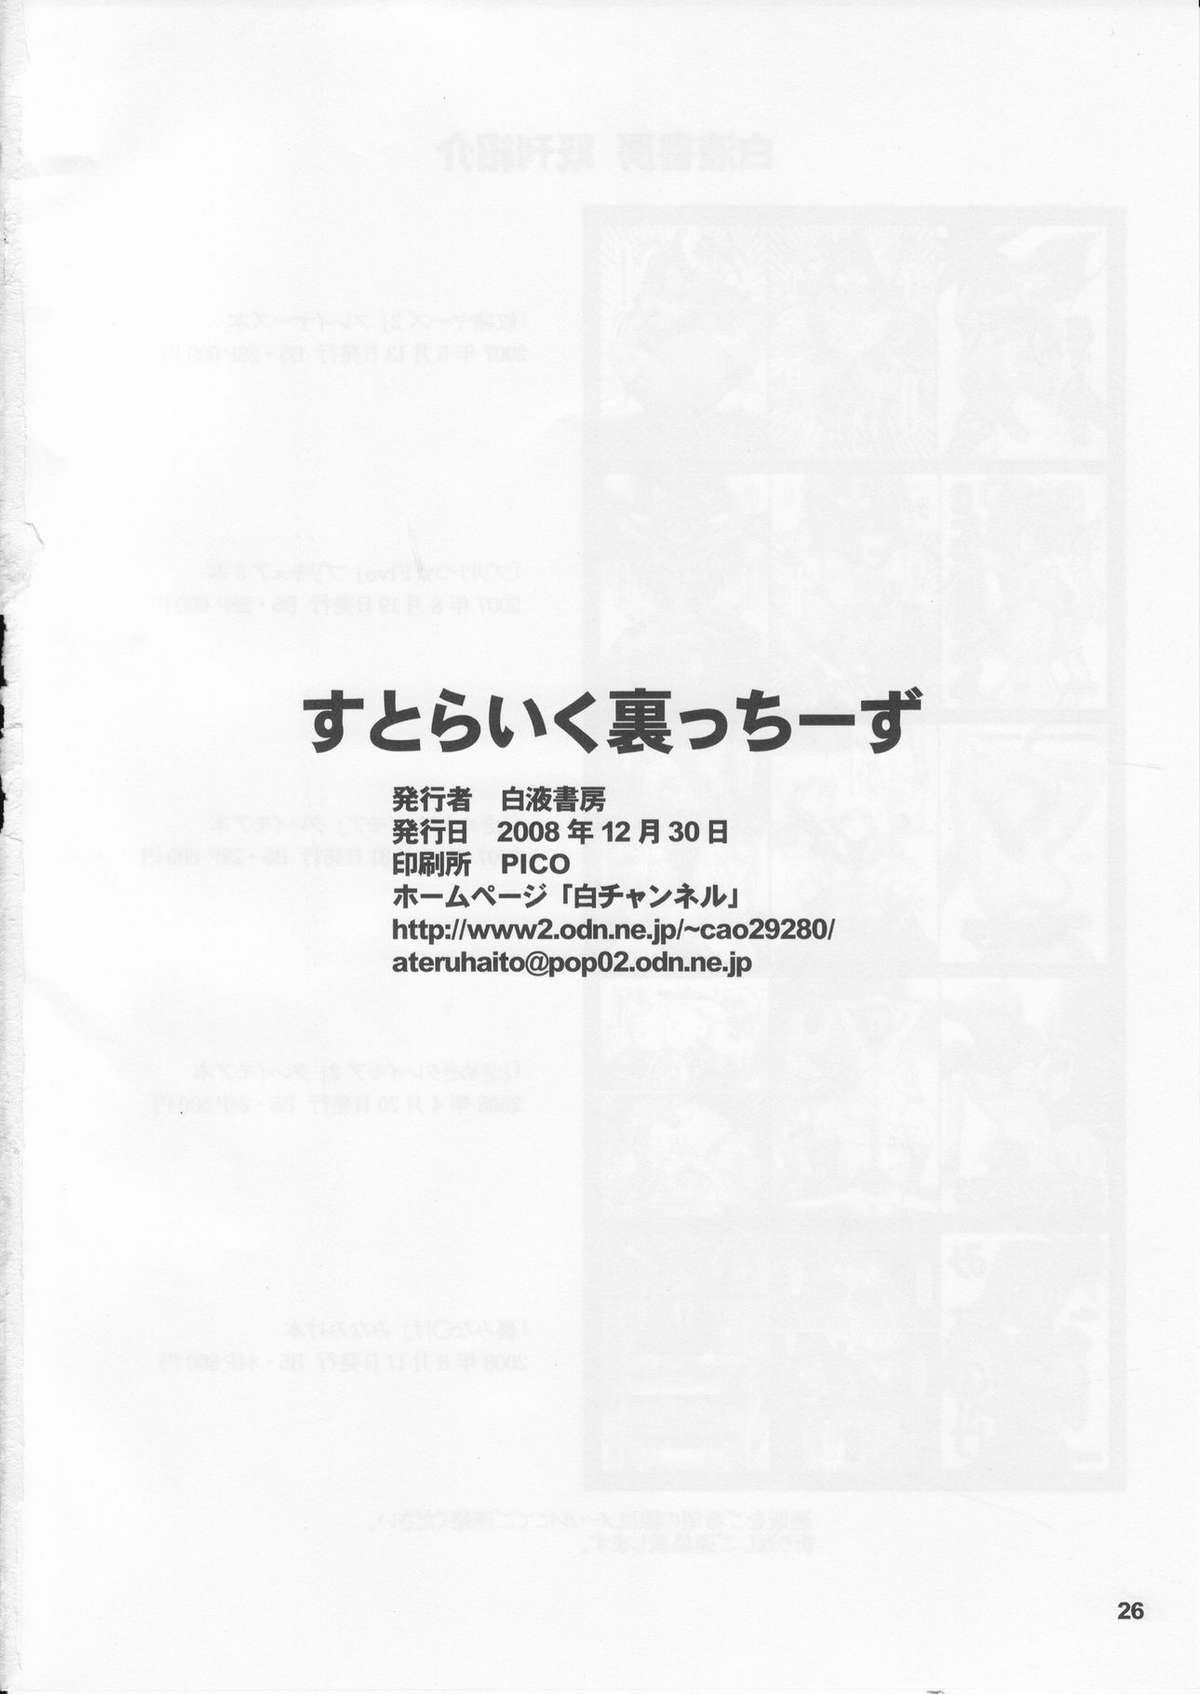 Public (C75) [HAKUEKI SHOBOU (A-Teru Haito)] Strike-Ura-Tches (Strike Witches) - Strike witches Assfingering - Page 25